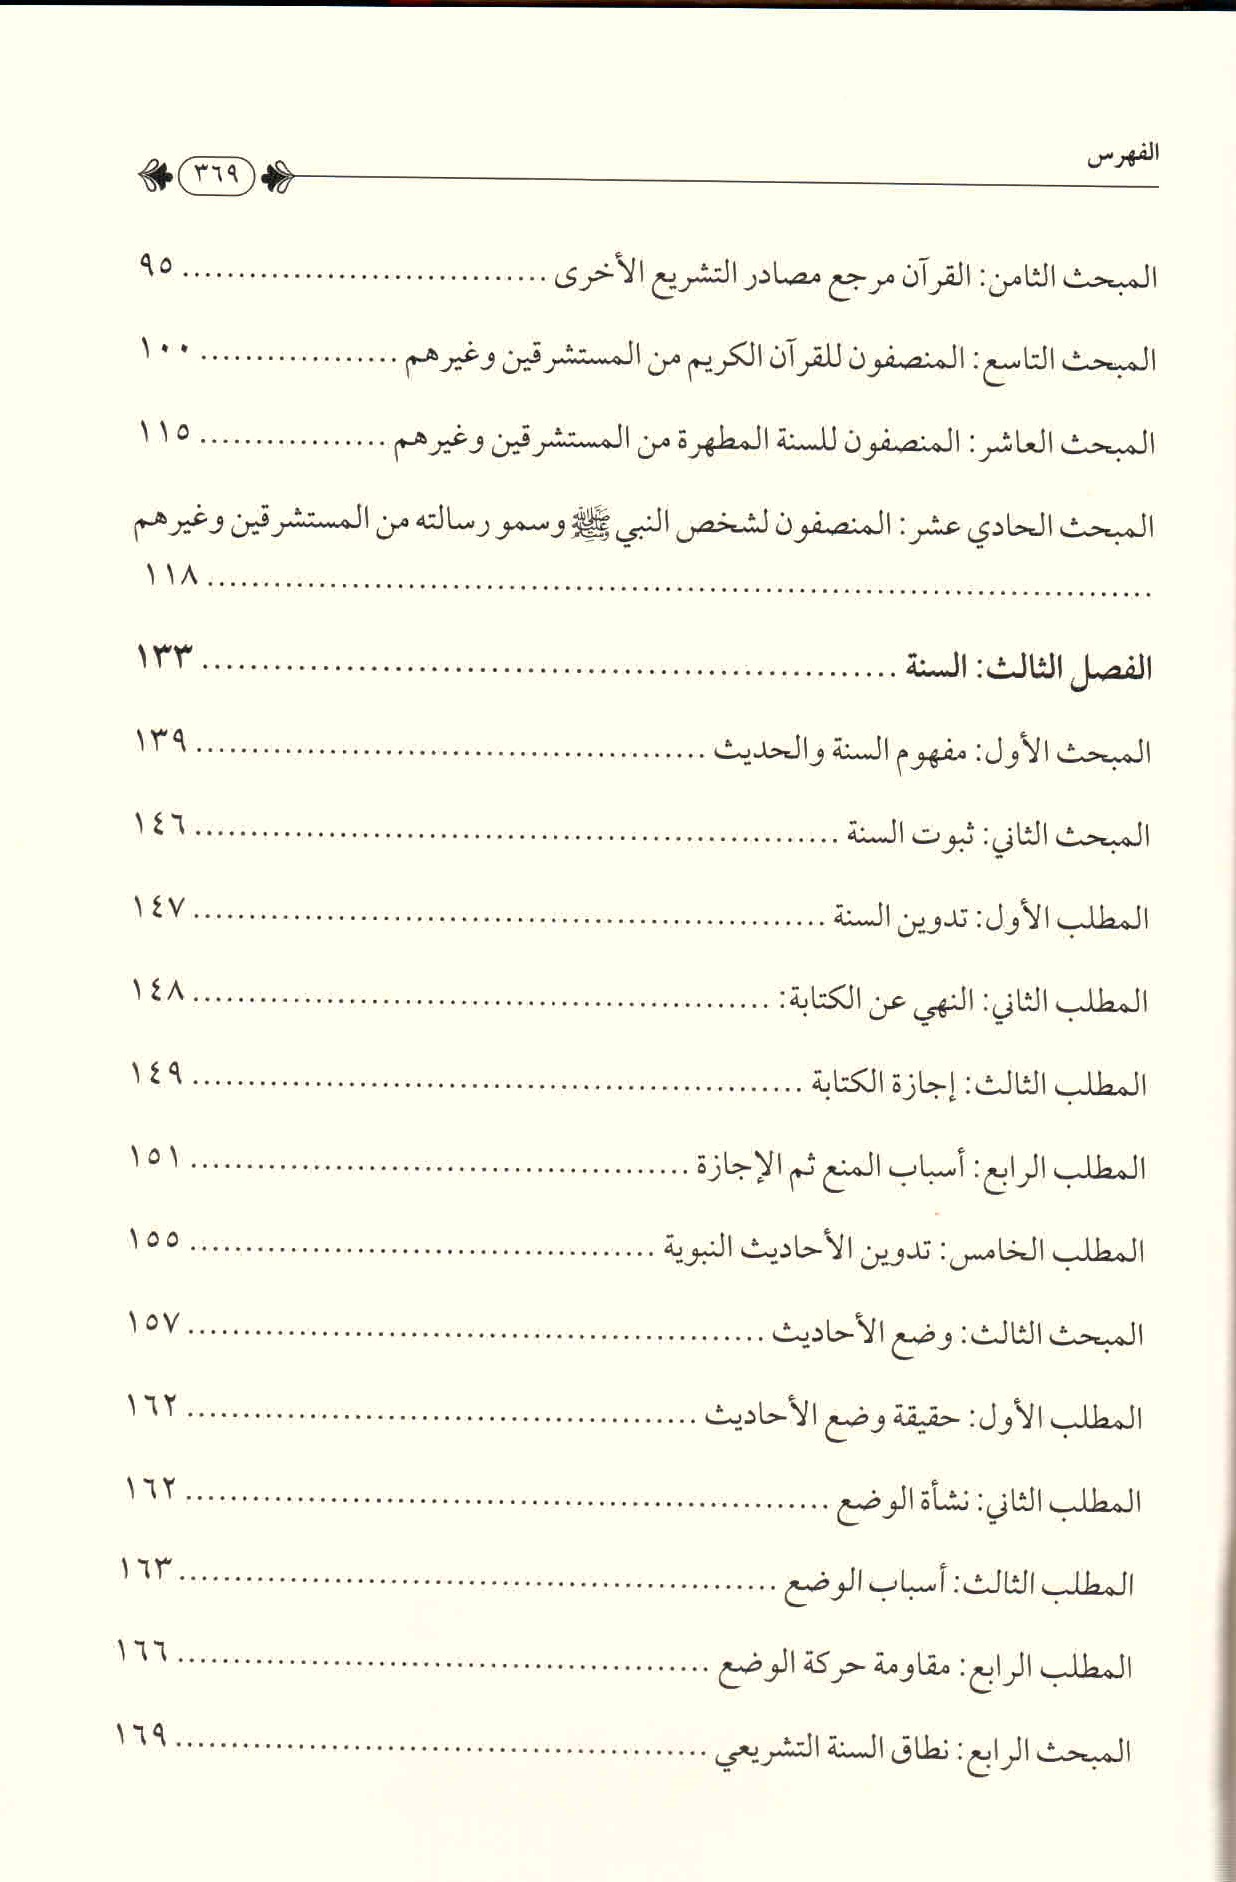 ص. 369 قائمة محتويات كتاب المستشرقون ومصادر التشريع الإسلامي.